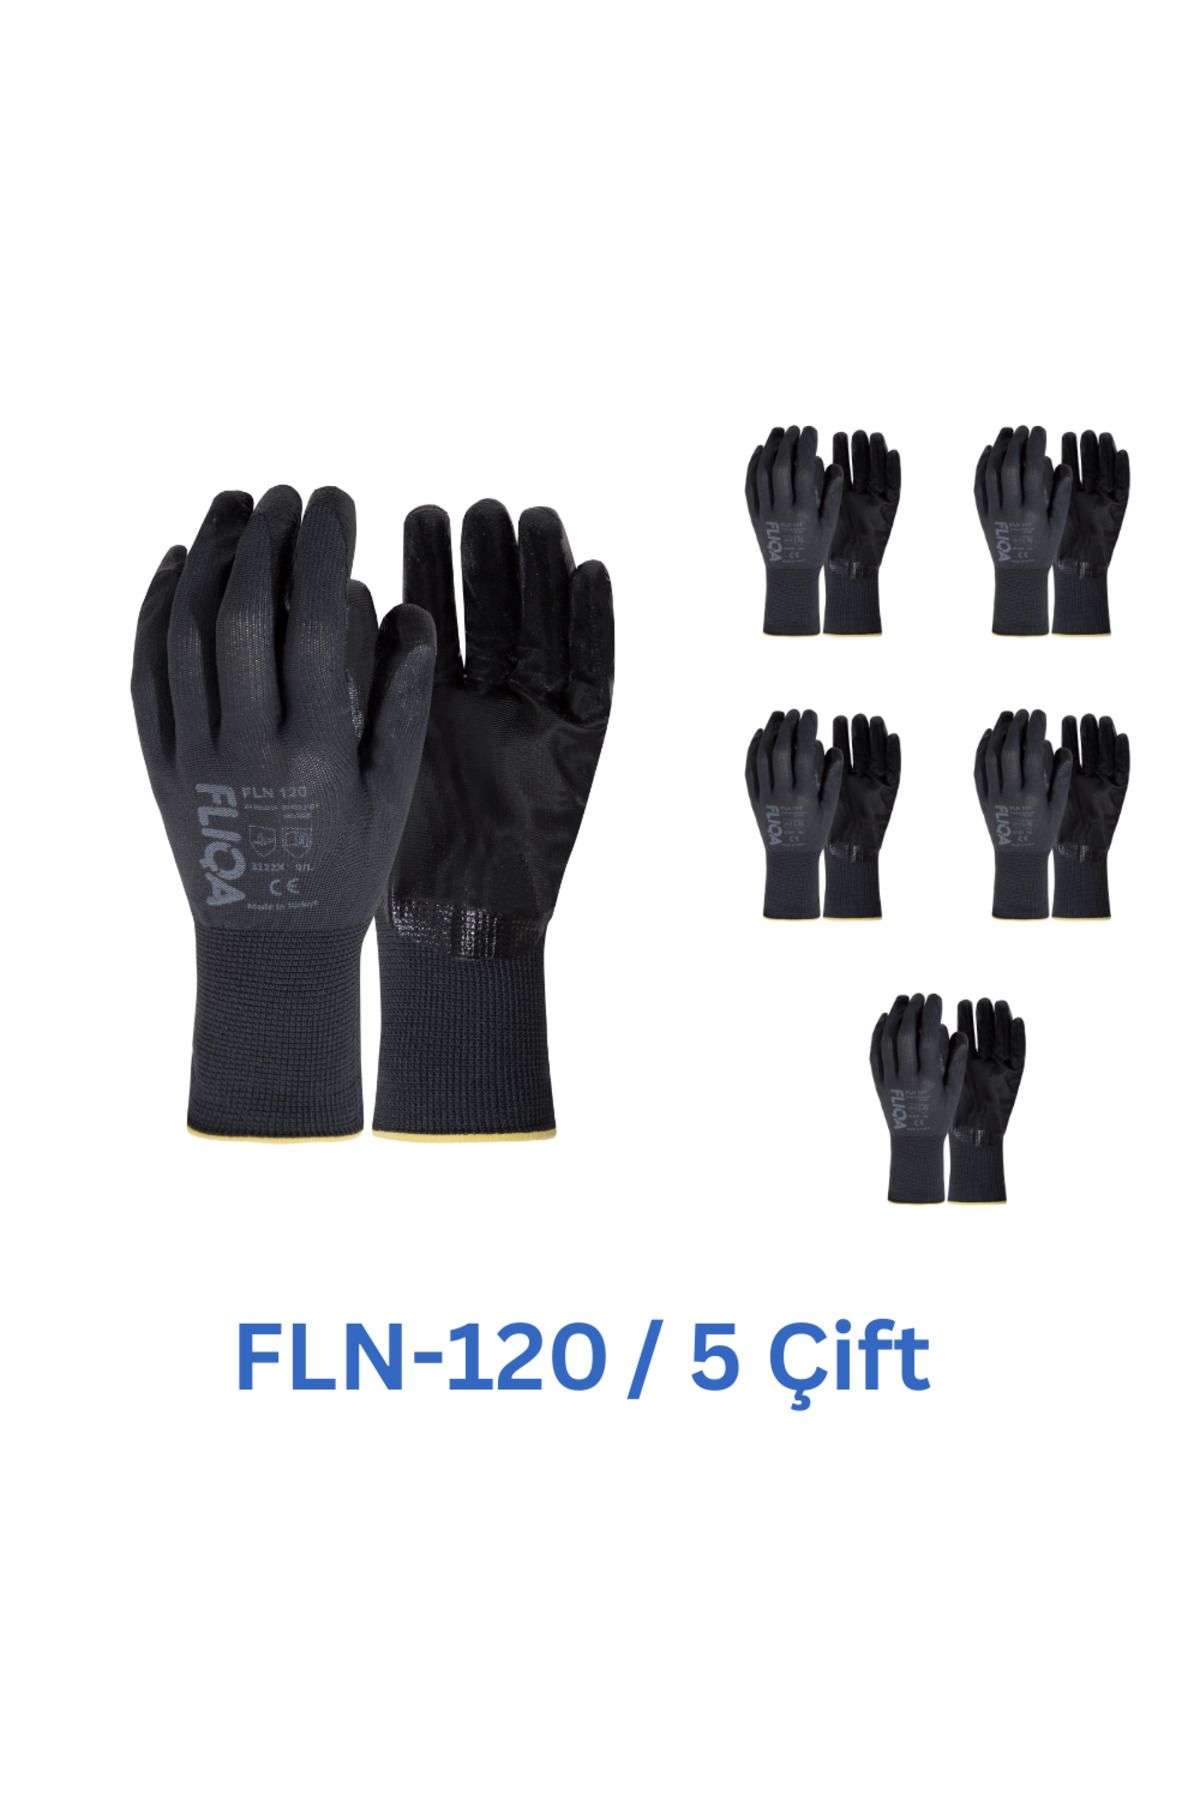 FLIQA FLN-120 1/2 Nitril Hassas Eldiven Siyah - 5 Çift